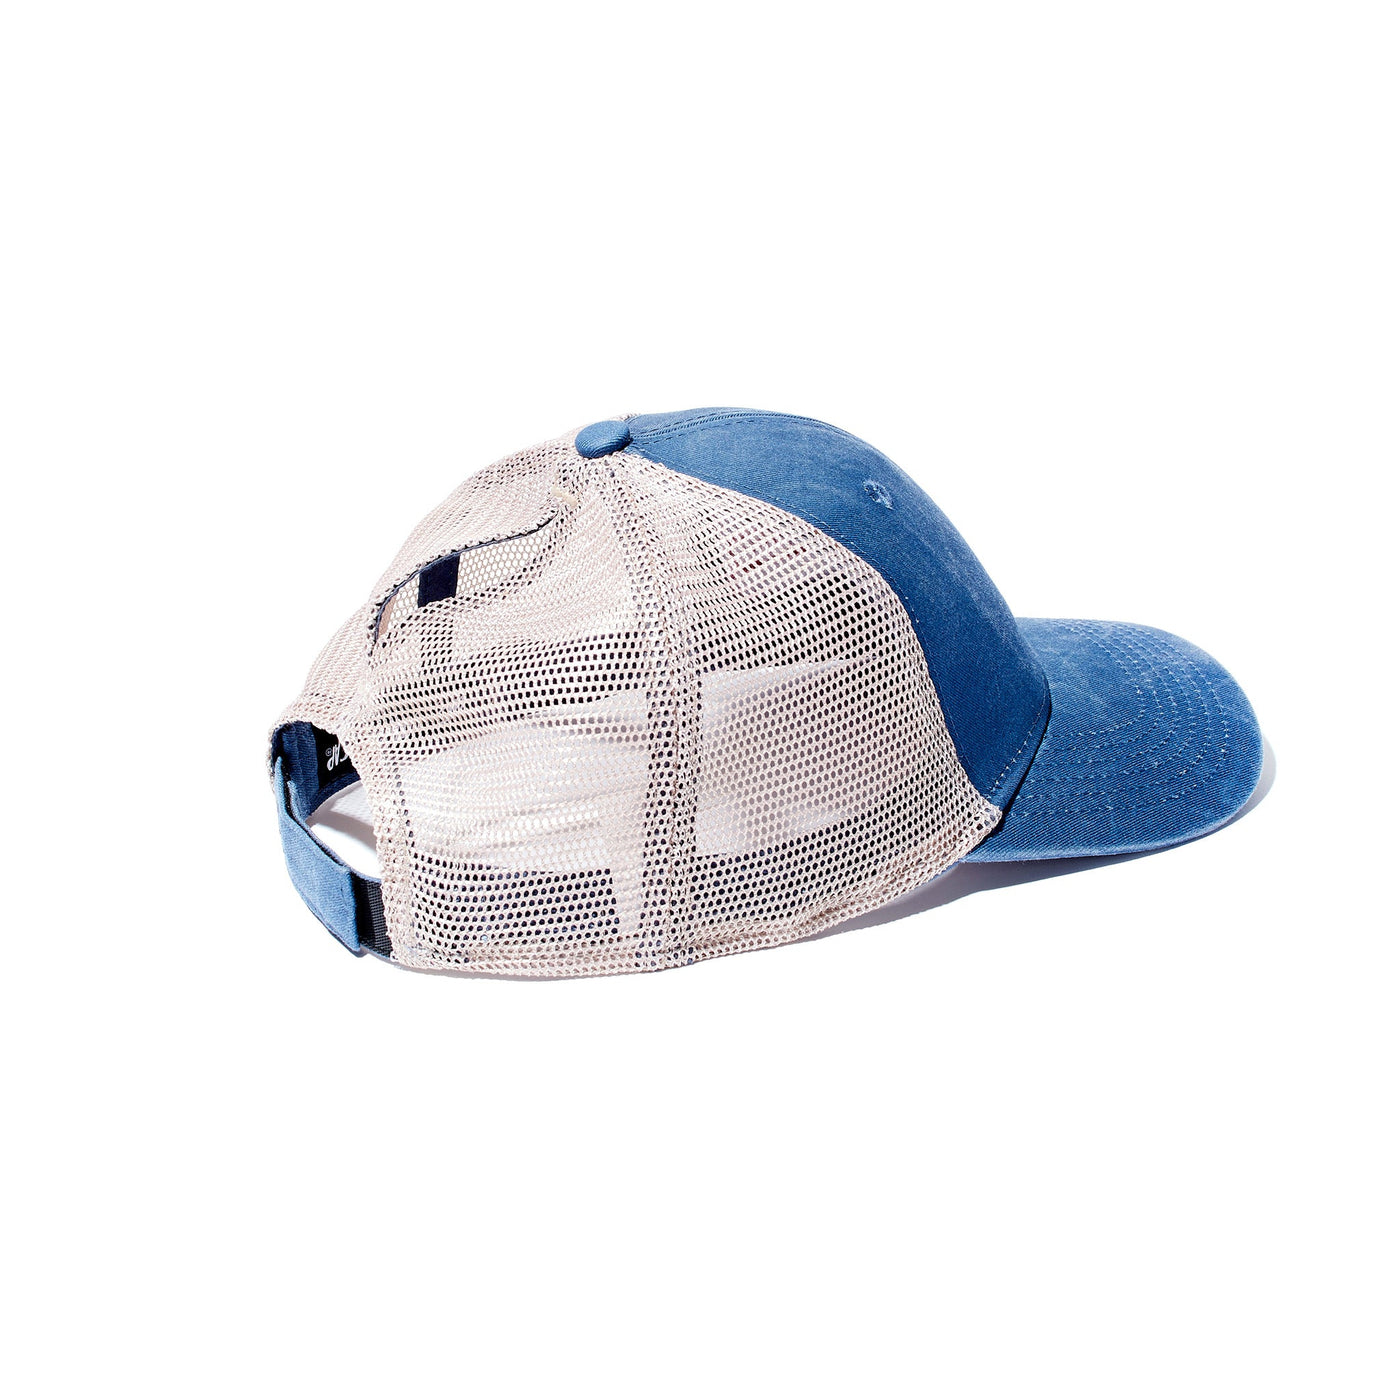 Blue Ponytail Cap - Carry The Load Shop